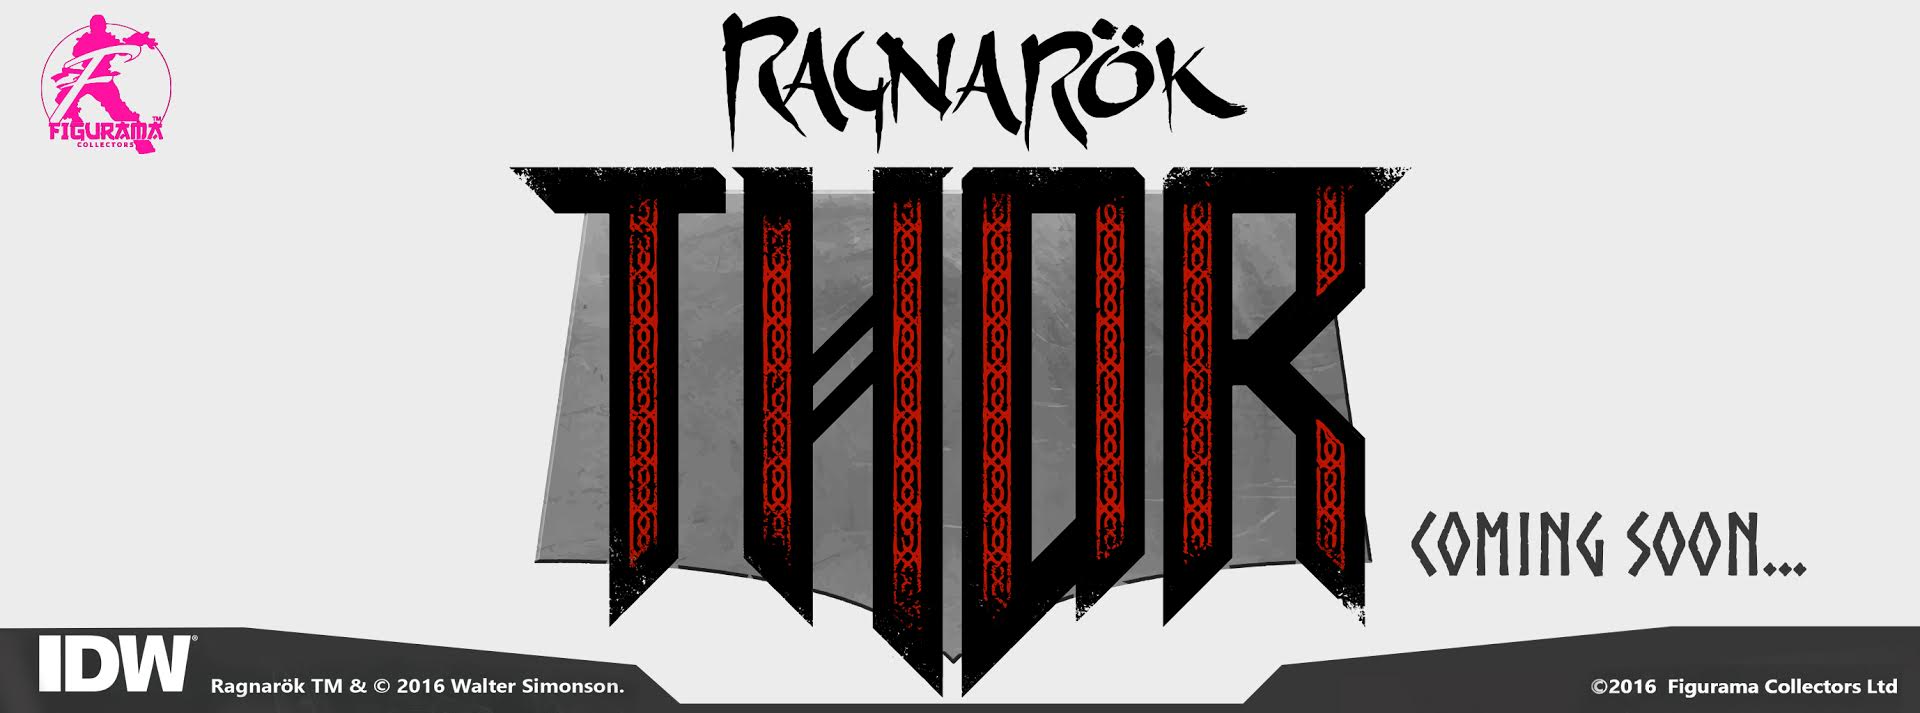 Figurama Collectors' Ragnarok Thor 1/6 scale figure Teaser logo